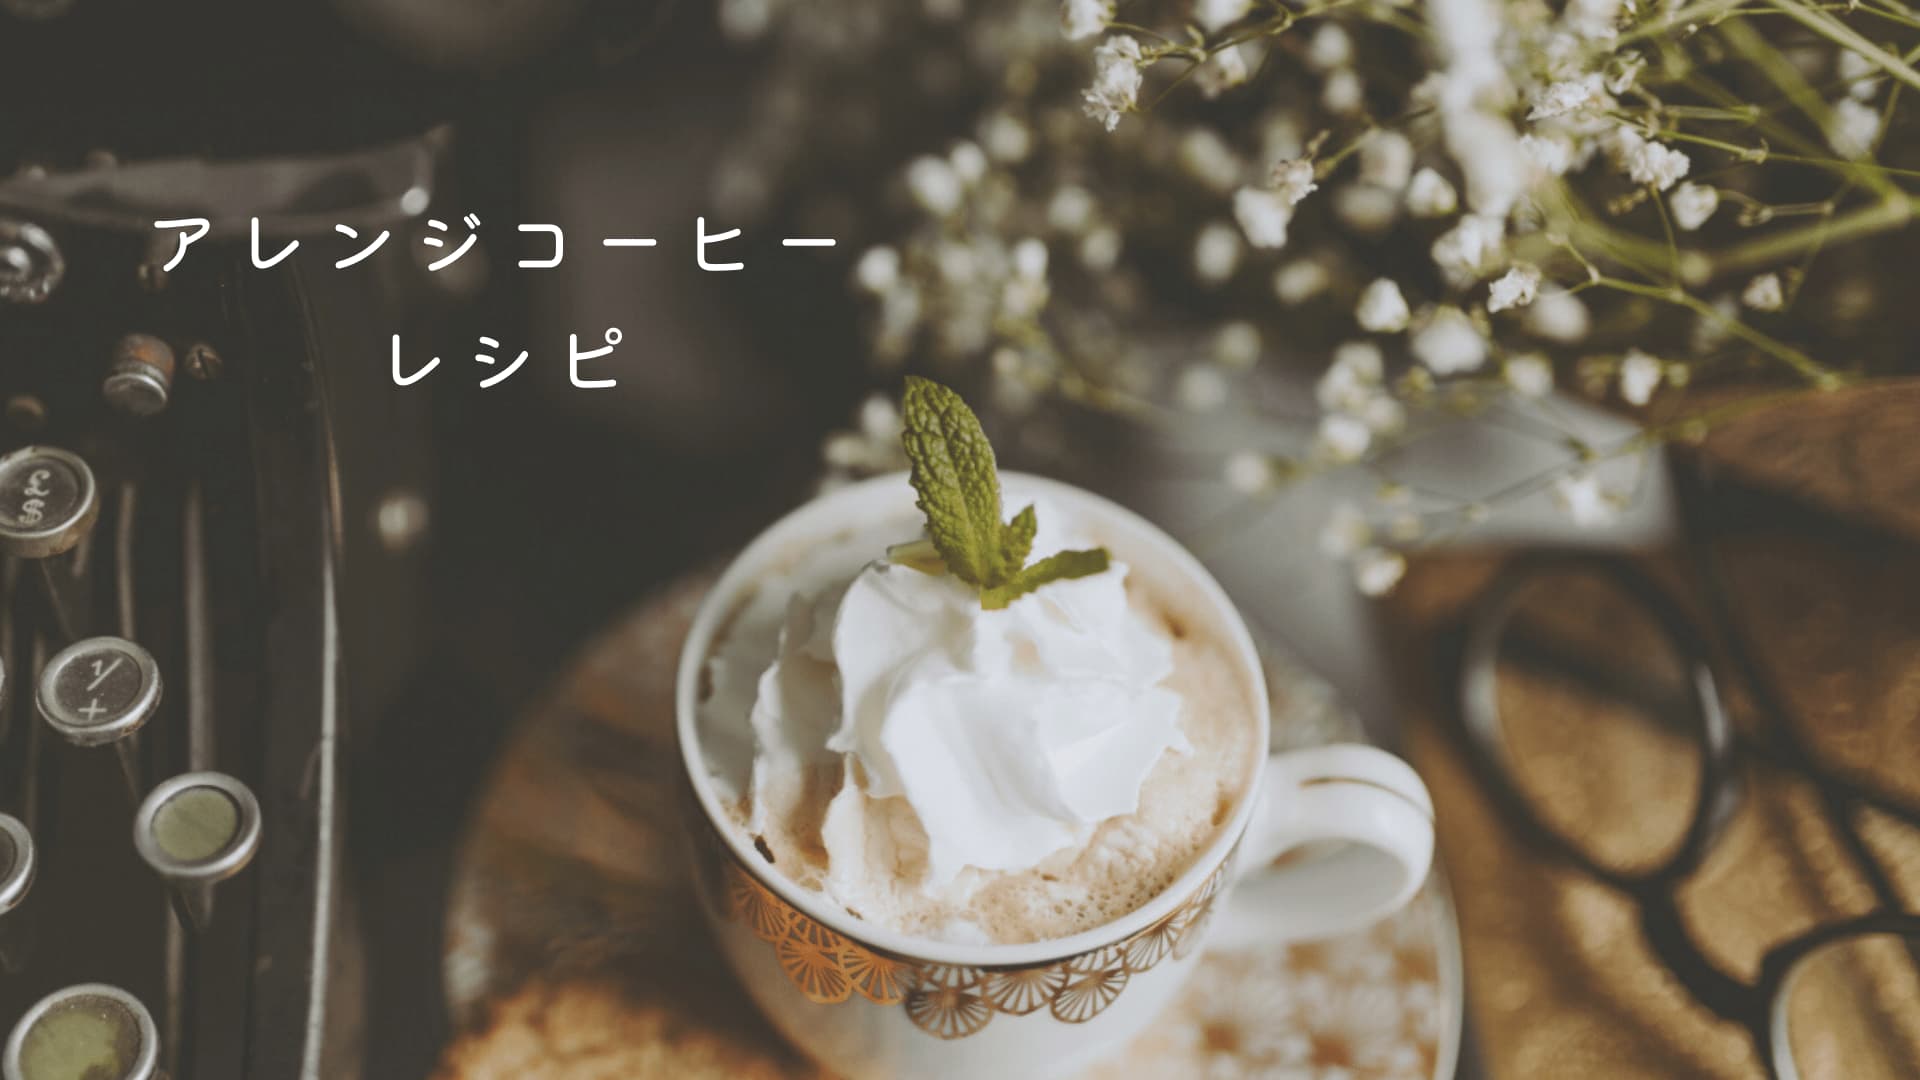 【本格おうちカフェ】簡単にできるコーヒーのアレンジレシピ